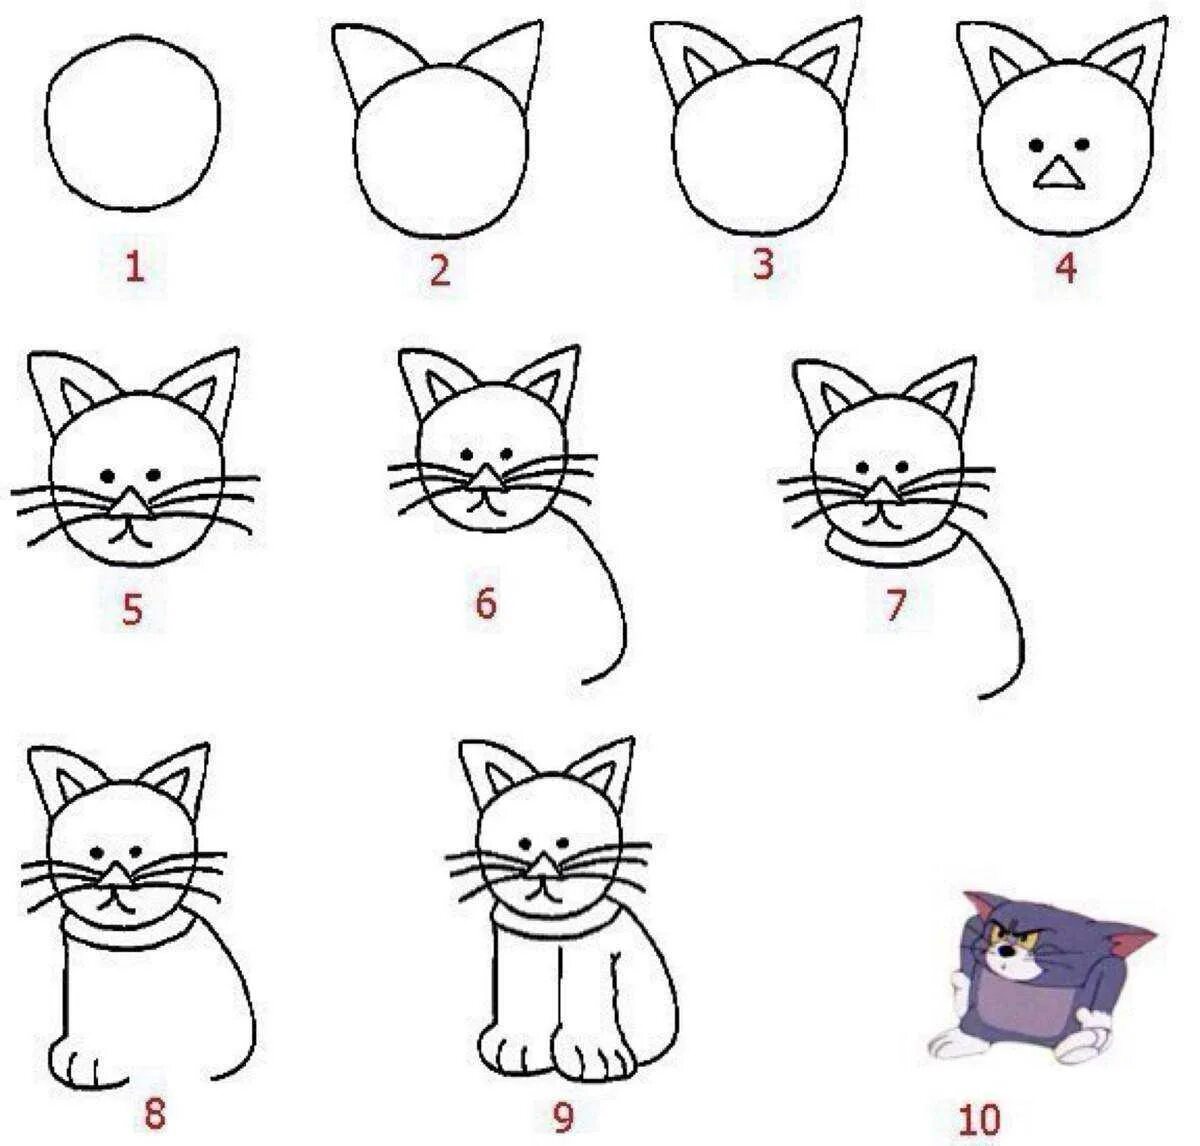 Нарисовать кошку пошагово для детей. Этапы рисования кошки для дошкольников. Поэтапное рисование кошки для детей. Рисуем кошку с детьми. Покажи как поэтапно нарисовать